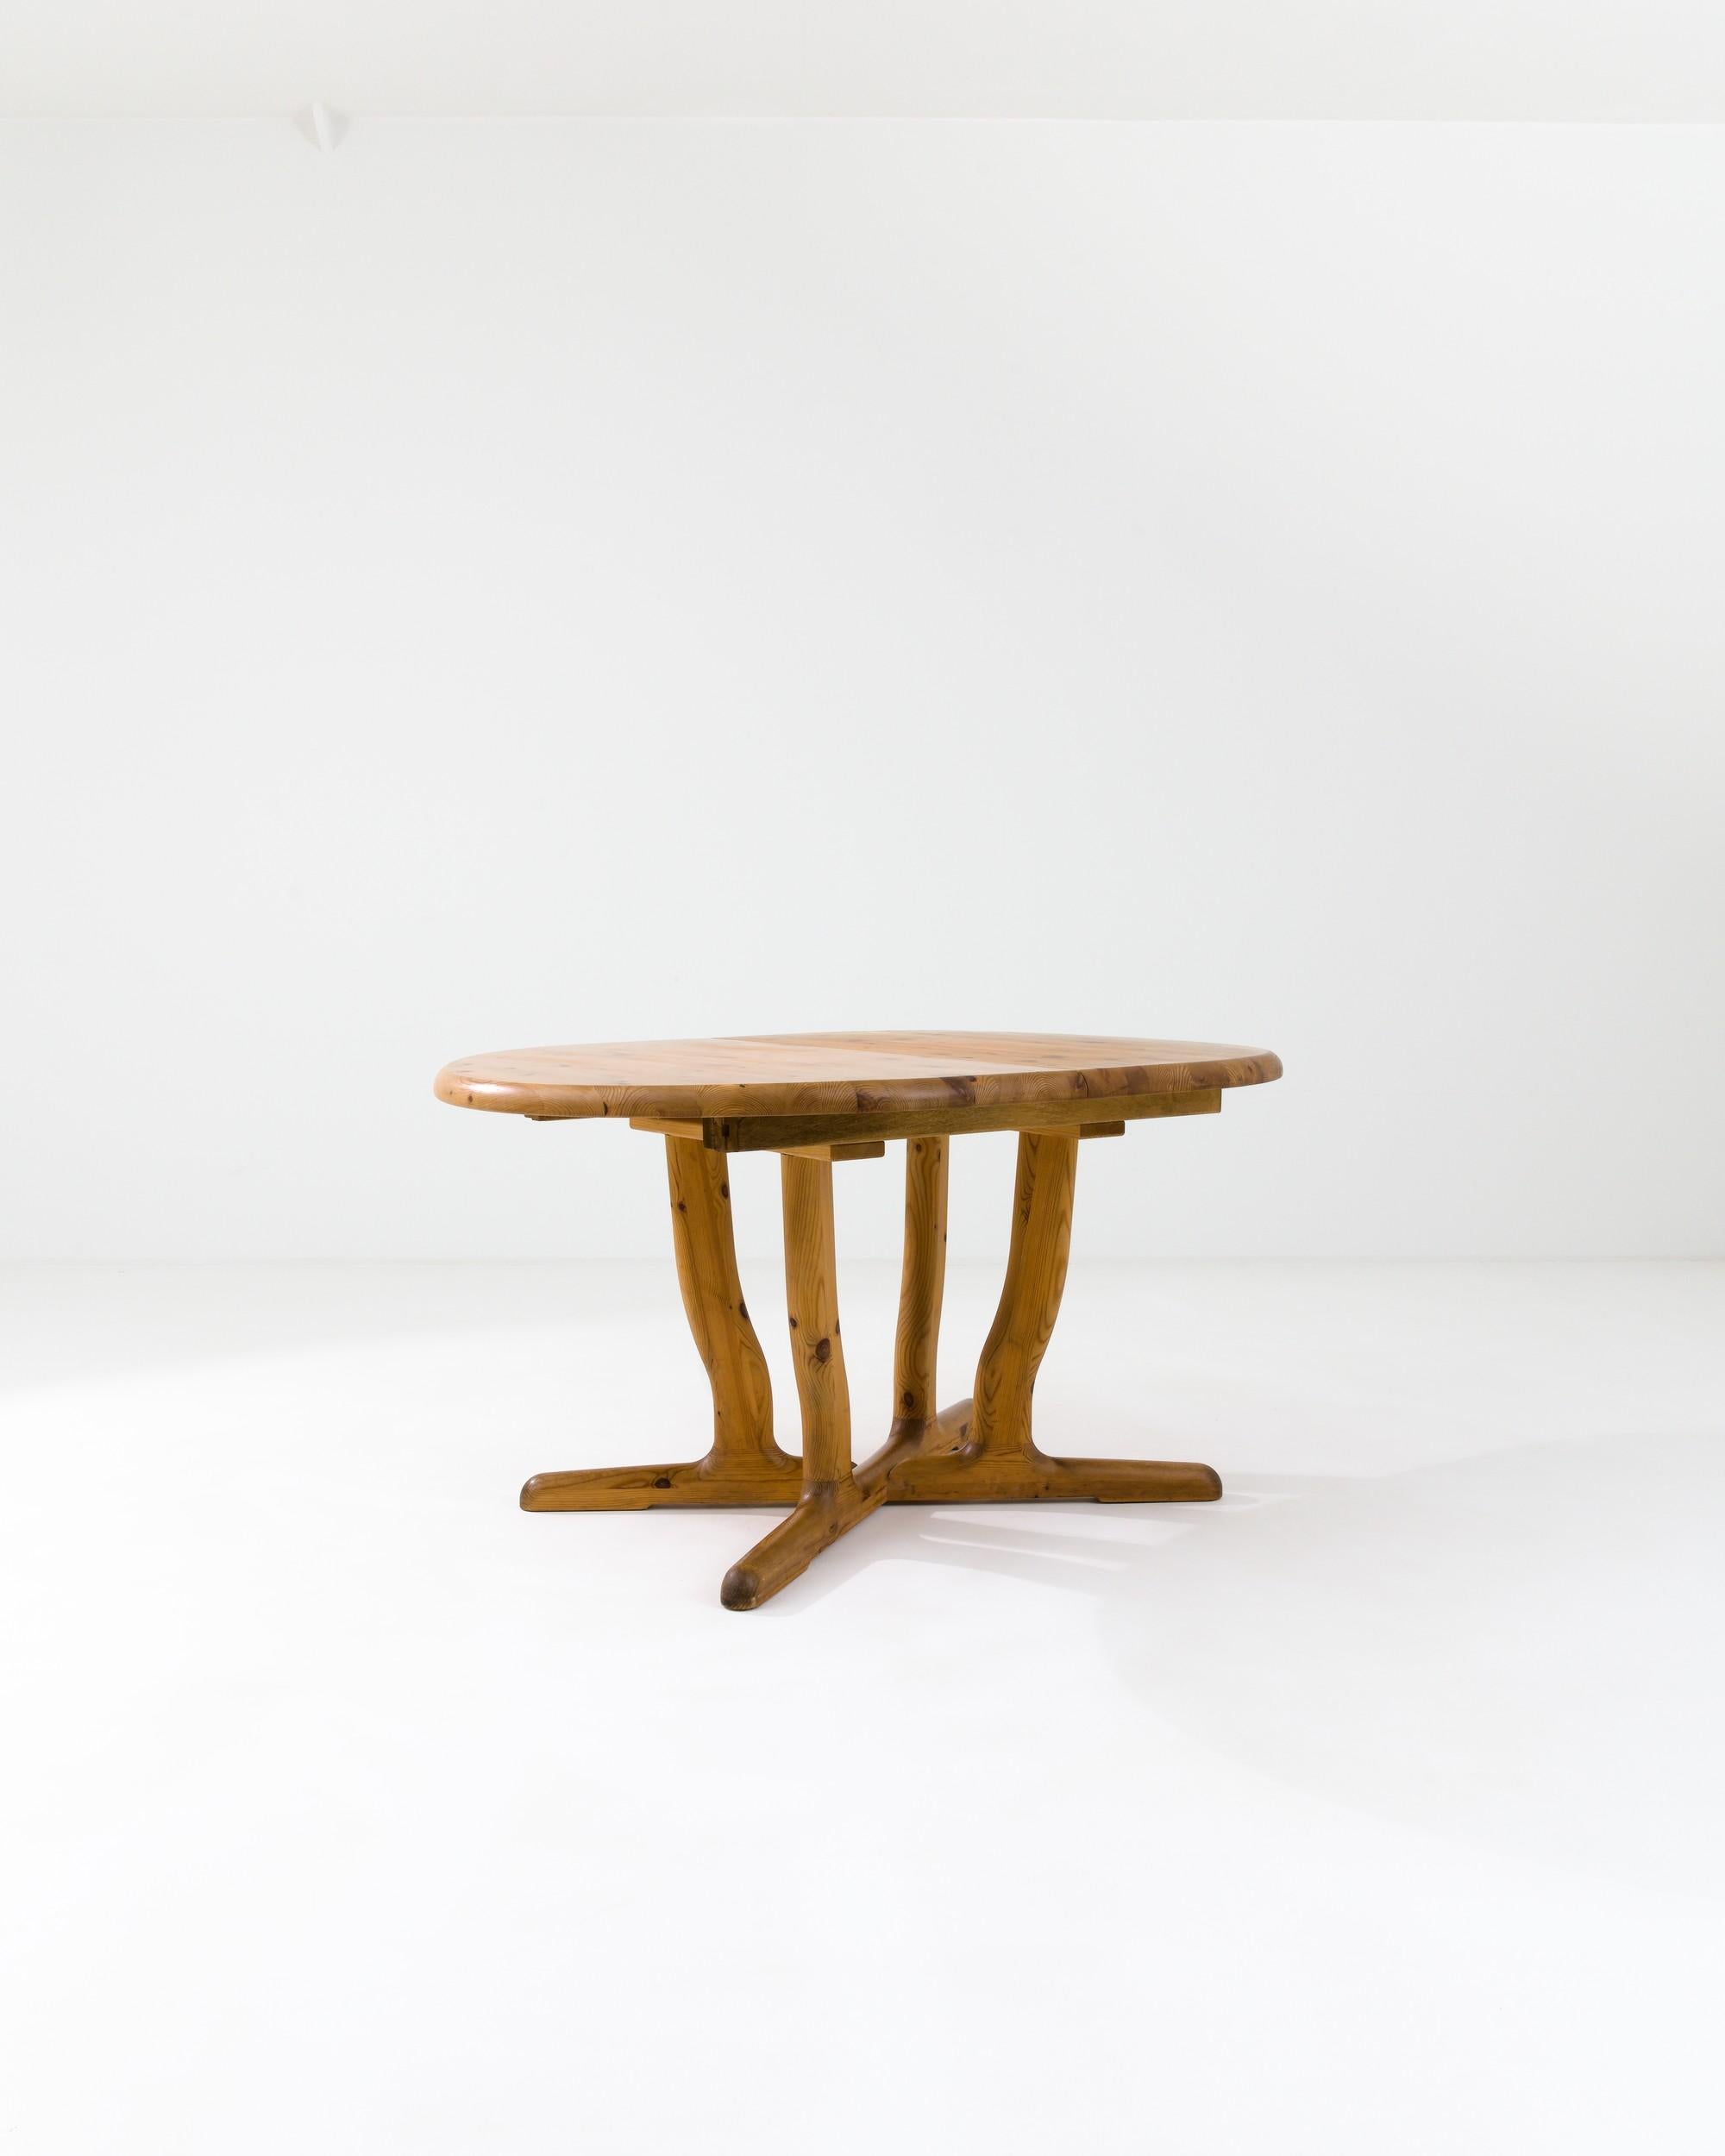 Dieser stilvolle Vintage-Tisch, der im Skandinavien des 20. Jahrhunderts hergestellt wurde, strahlt ein Gefühl von Fluidität aus. Die leicht geschwungenen Beine werden durch eine faszinierende Holzmaserung mit natürlichen Ornamenten hervorgehoben.